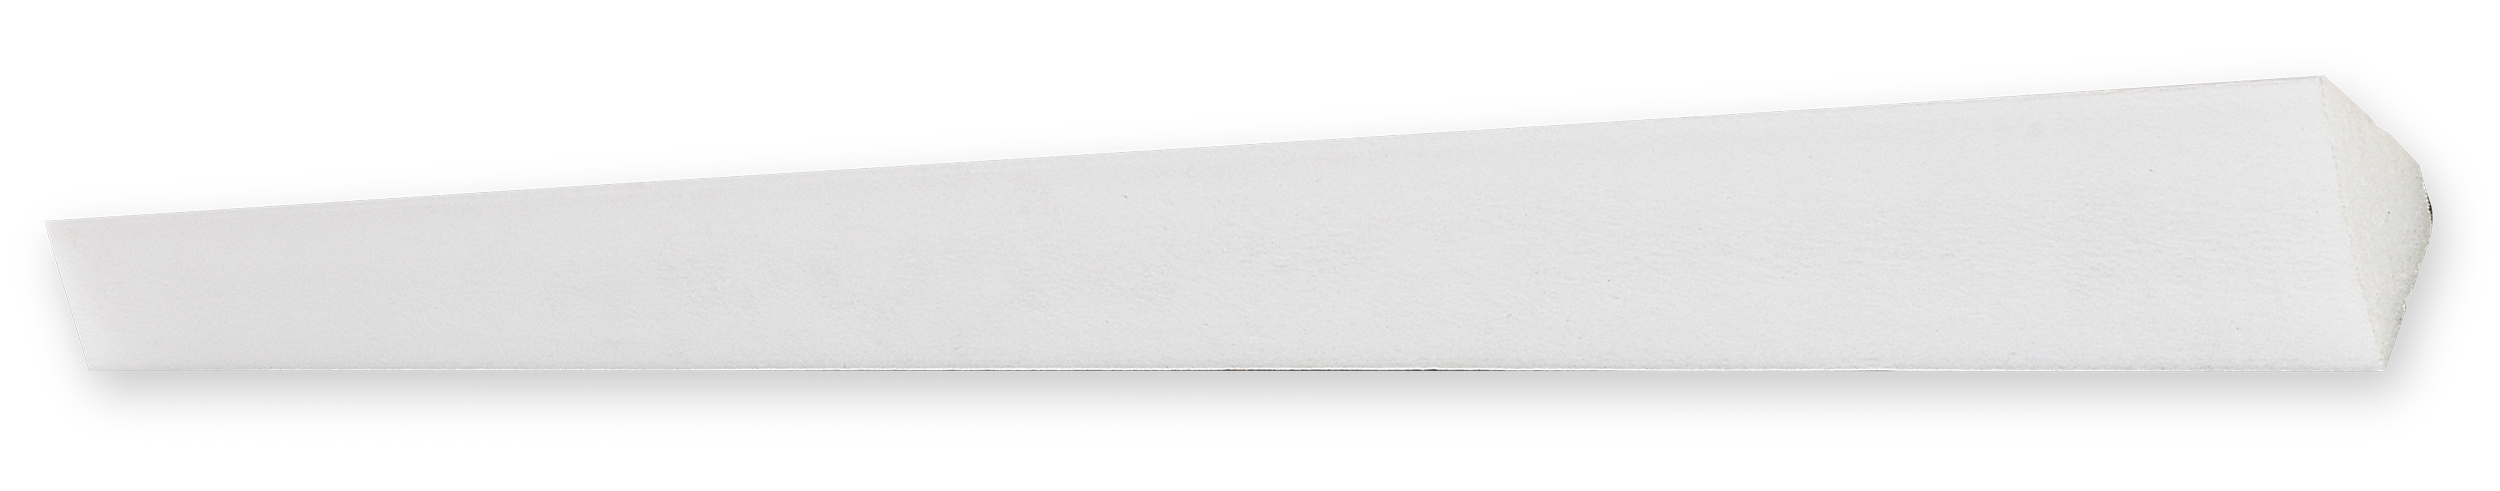 Decosa Zierprofil H20, weiß, 22 x 22 mm, Länge: 2 m